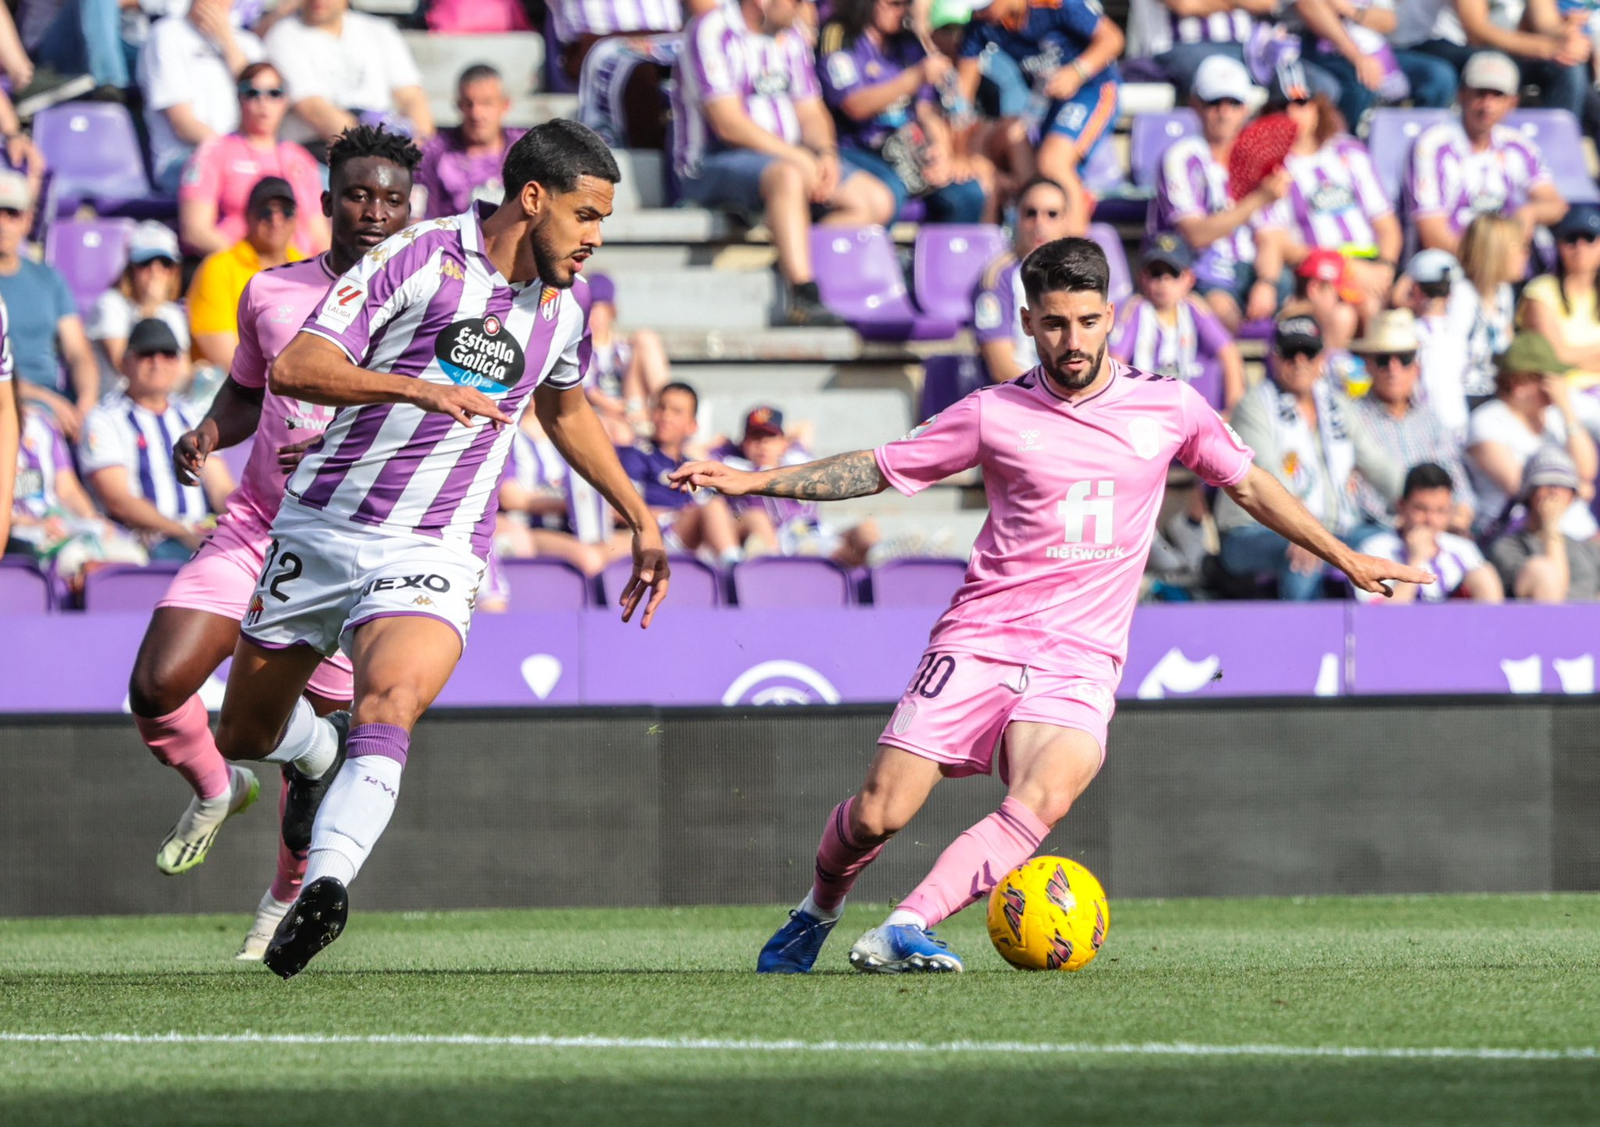 Cris Montes controlando el balón en el partido entre el Real Valladolid contra el CD Eldense. Monchu anotó el gol de la victoria.